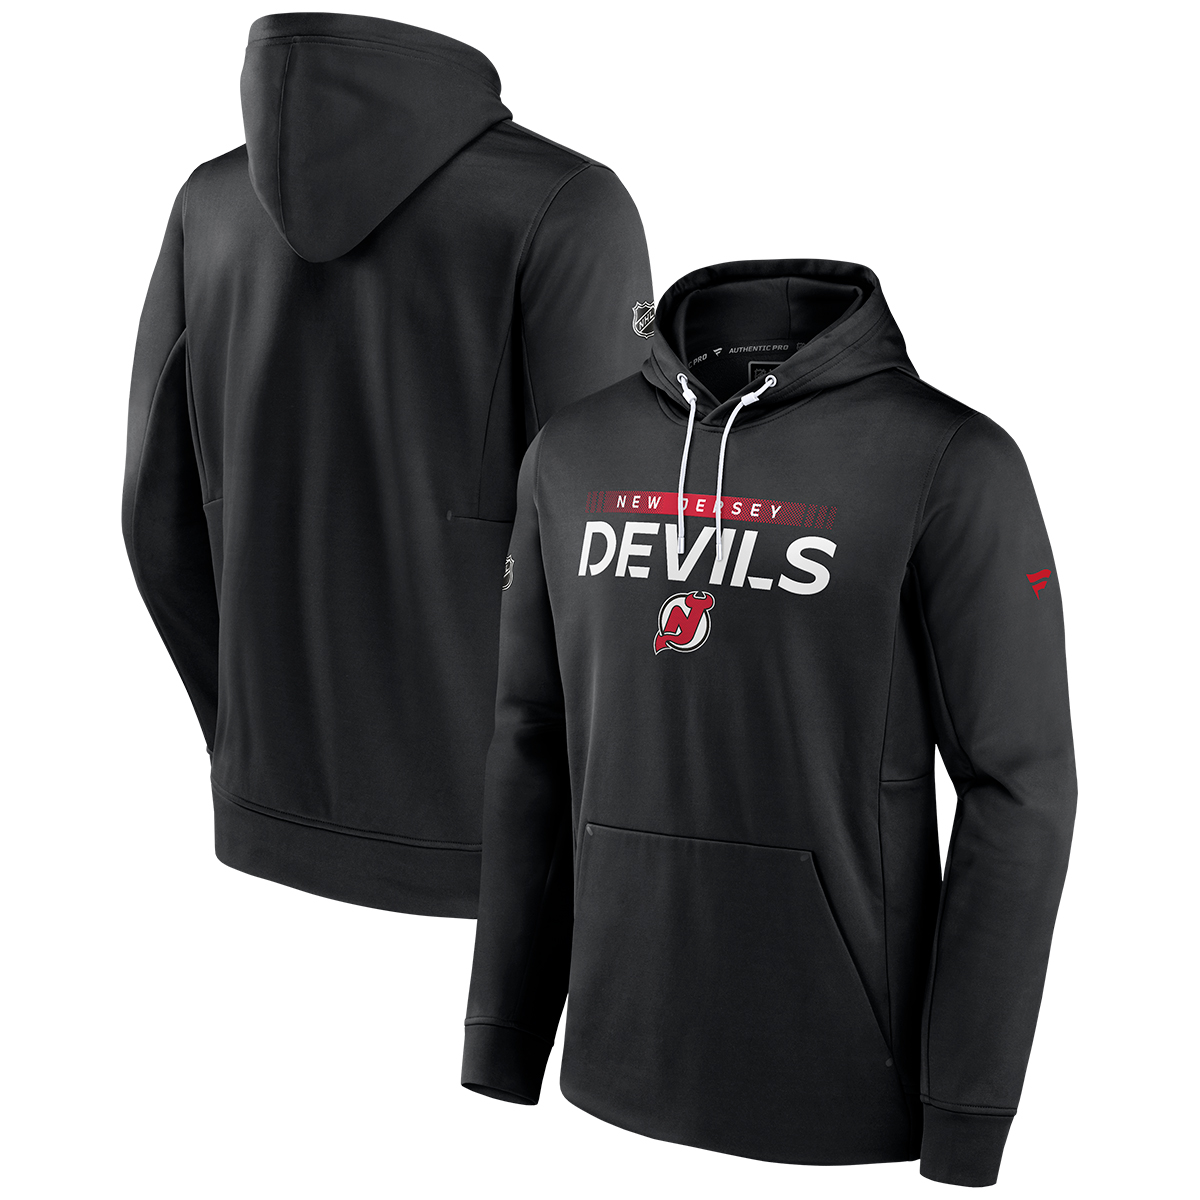 New Jersey Devils Men's Fanatics Authentic Pro Core Collection Prime Hoodie